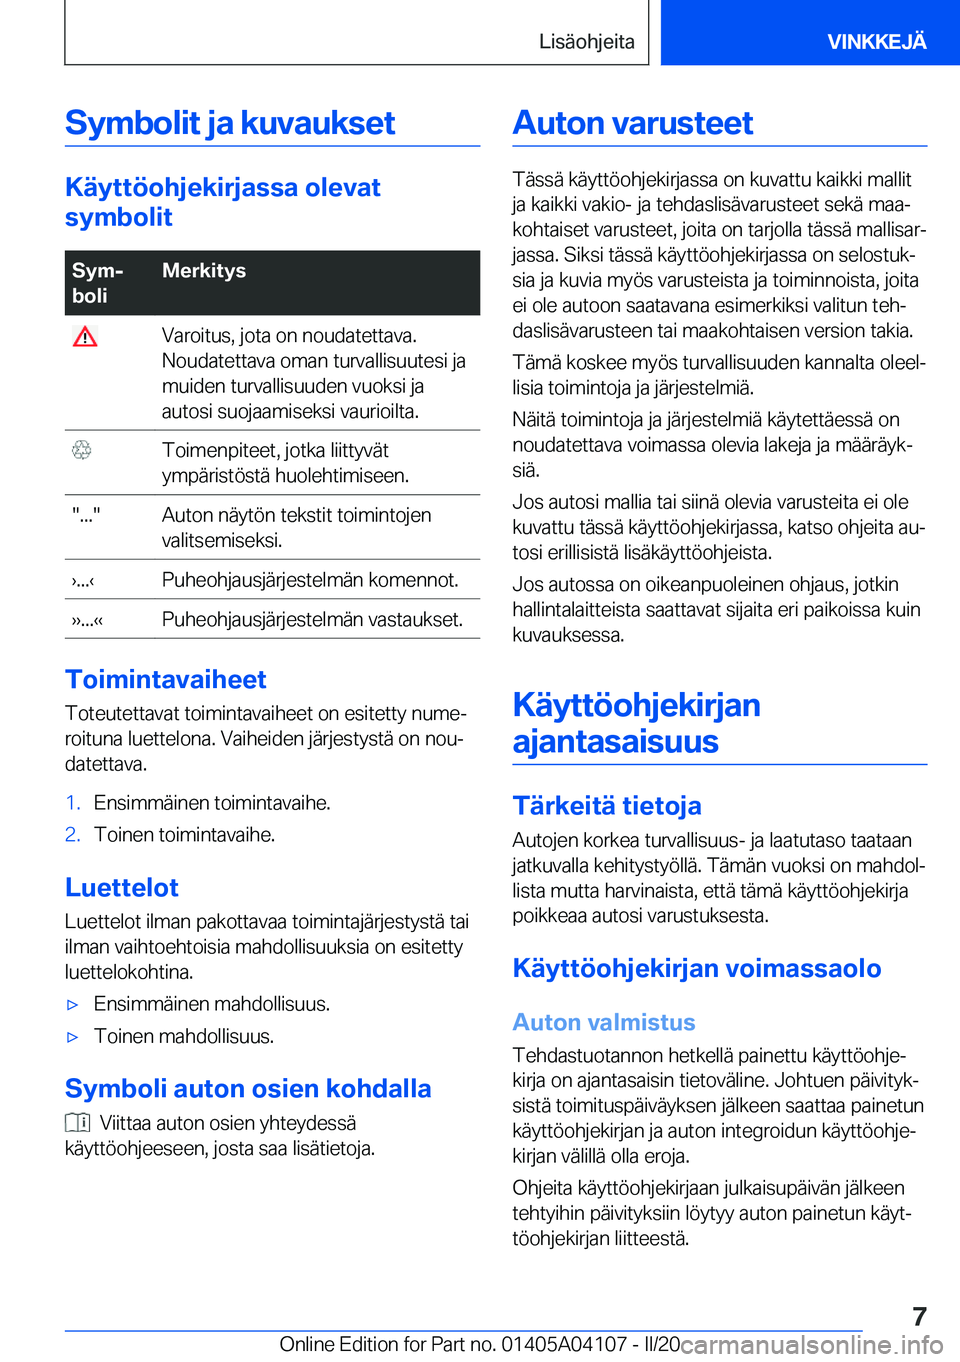 BMW Z4 2020  Omistajan Käsikirja (in Finnish) �S�y�m�b�o�l�i�t��j�a��k�u�v�a�u�k�s�e�t
�K�